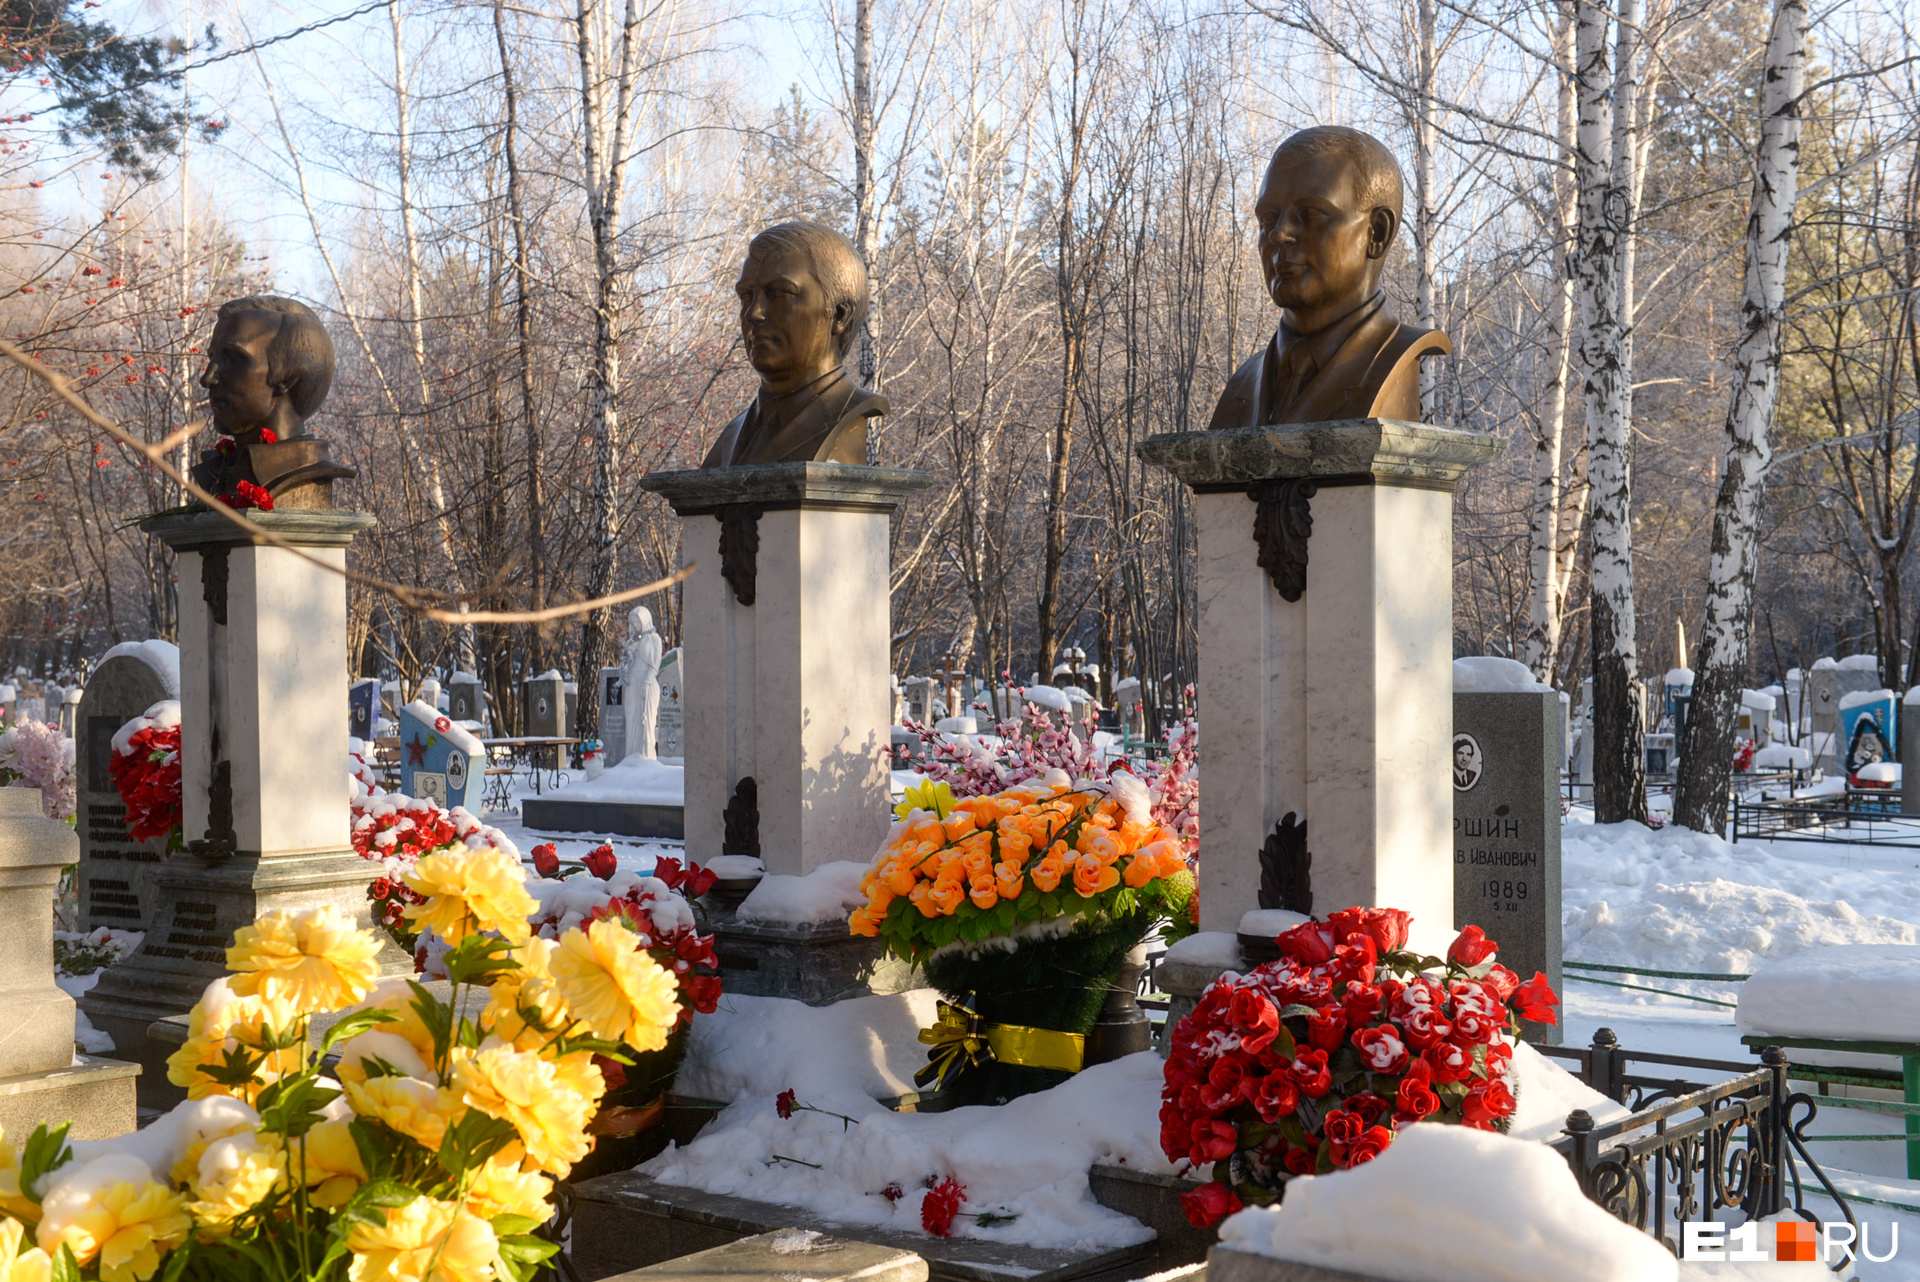 На могилах — свежие цветы. Когда мы приехали, какой-то мужчина расчищал от снега дорожку к мемориалу